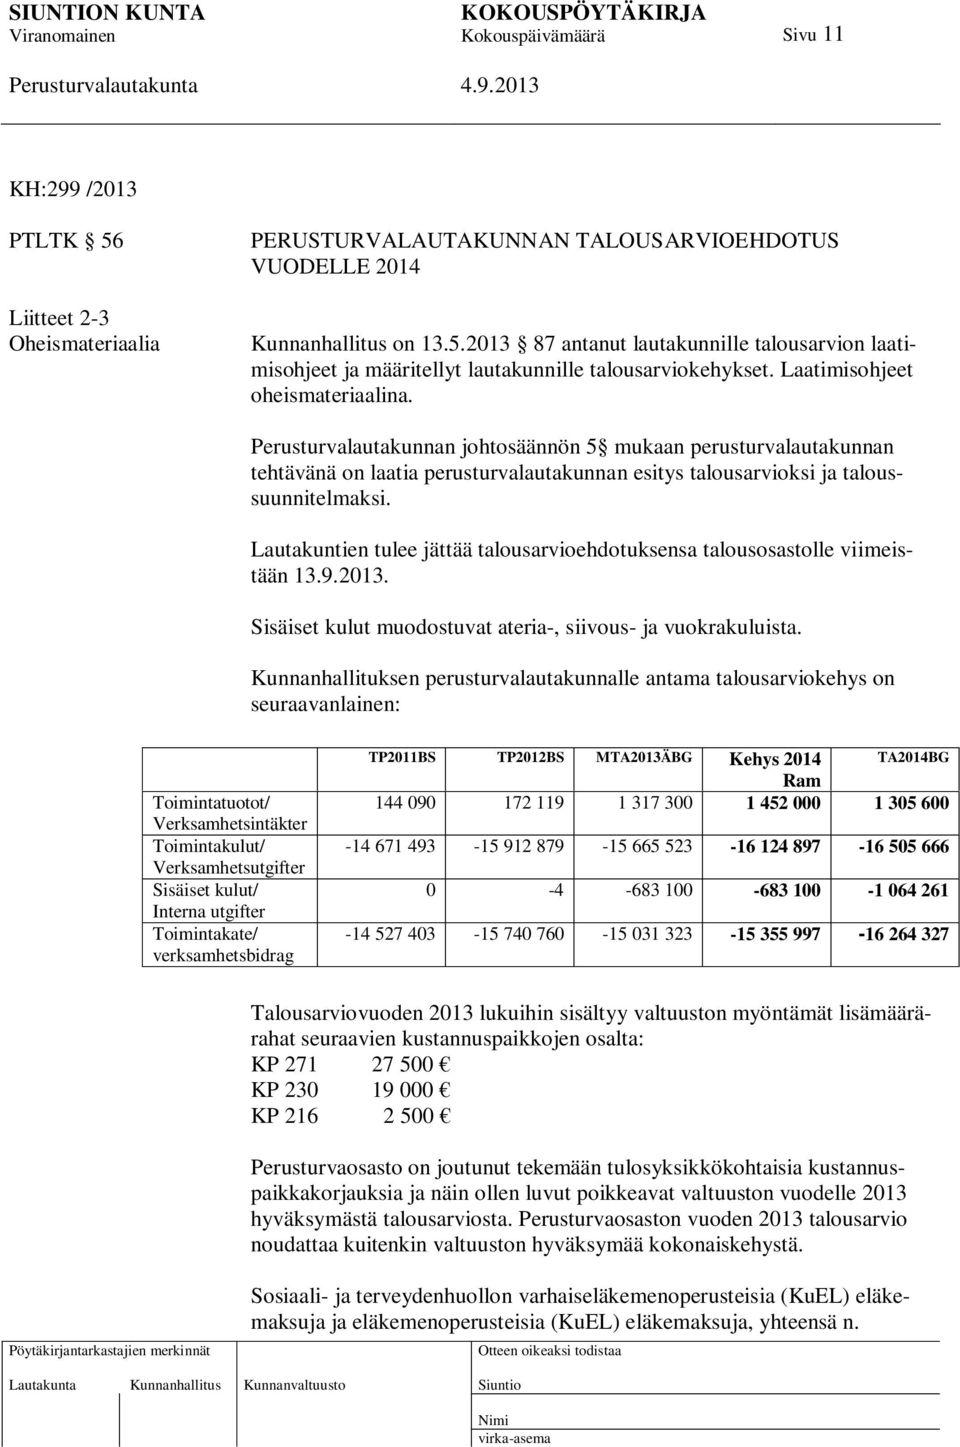 Lautakuntien tulee jättää talousarvioehdotuksensa talousosastolle viimeistään 13.9.2013. Sisäiset kulut muodostuvat ateria-, siivous- ja vuokrakuluista.